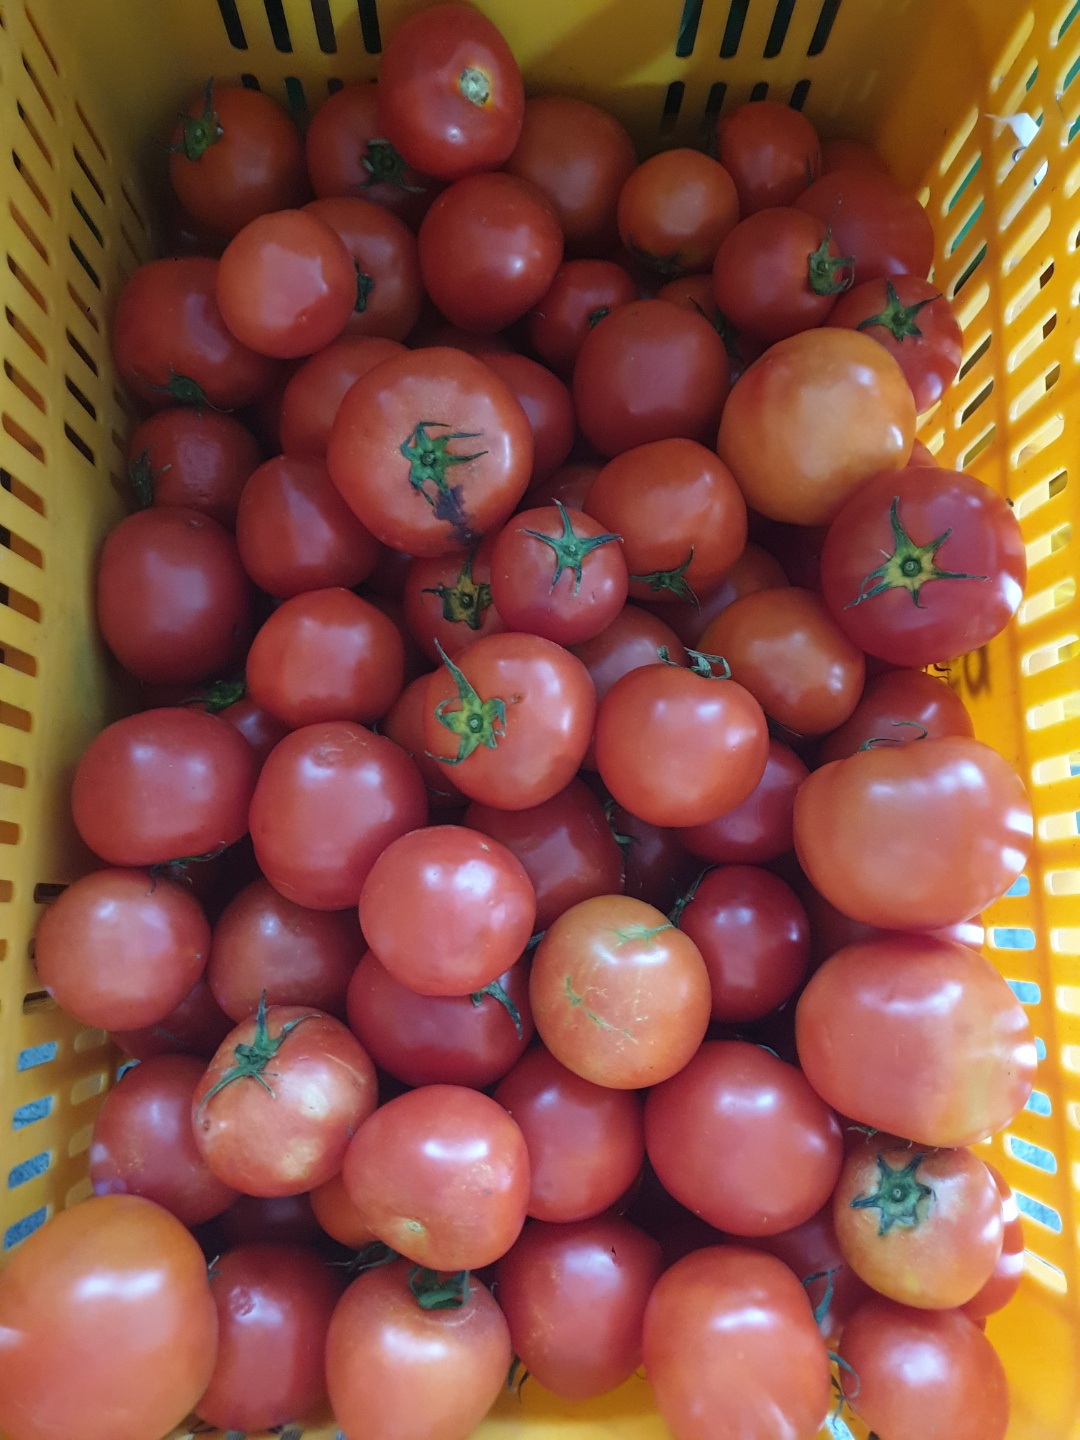 에덴건강원에서 토마토 90박스를 후원해주셨습니다!